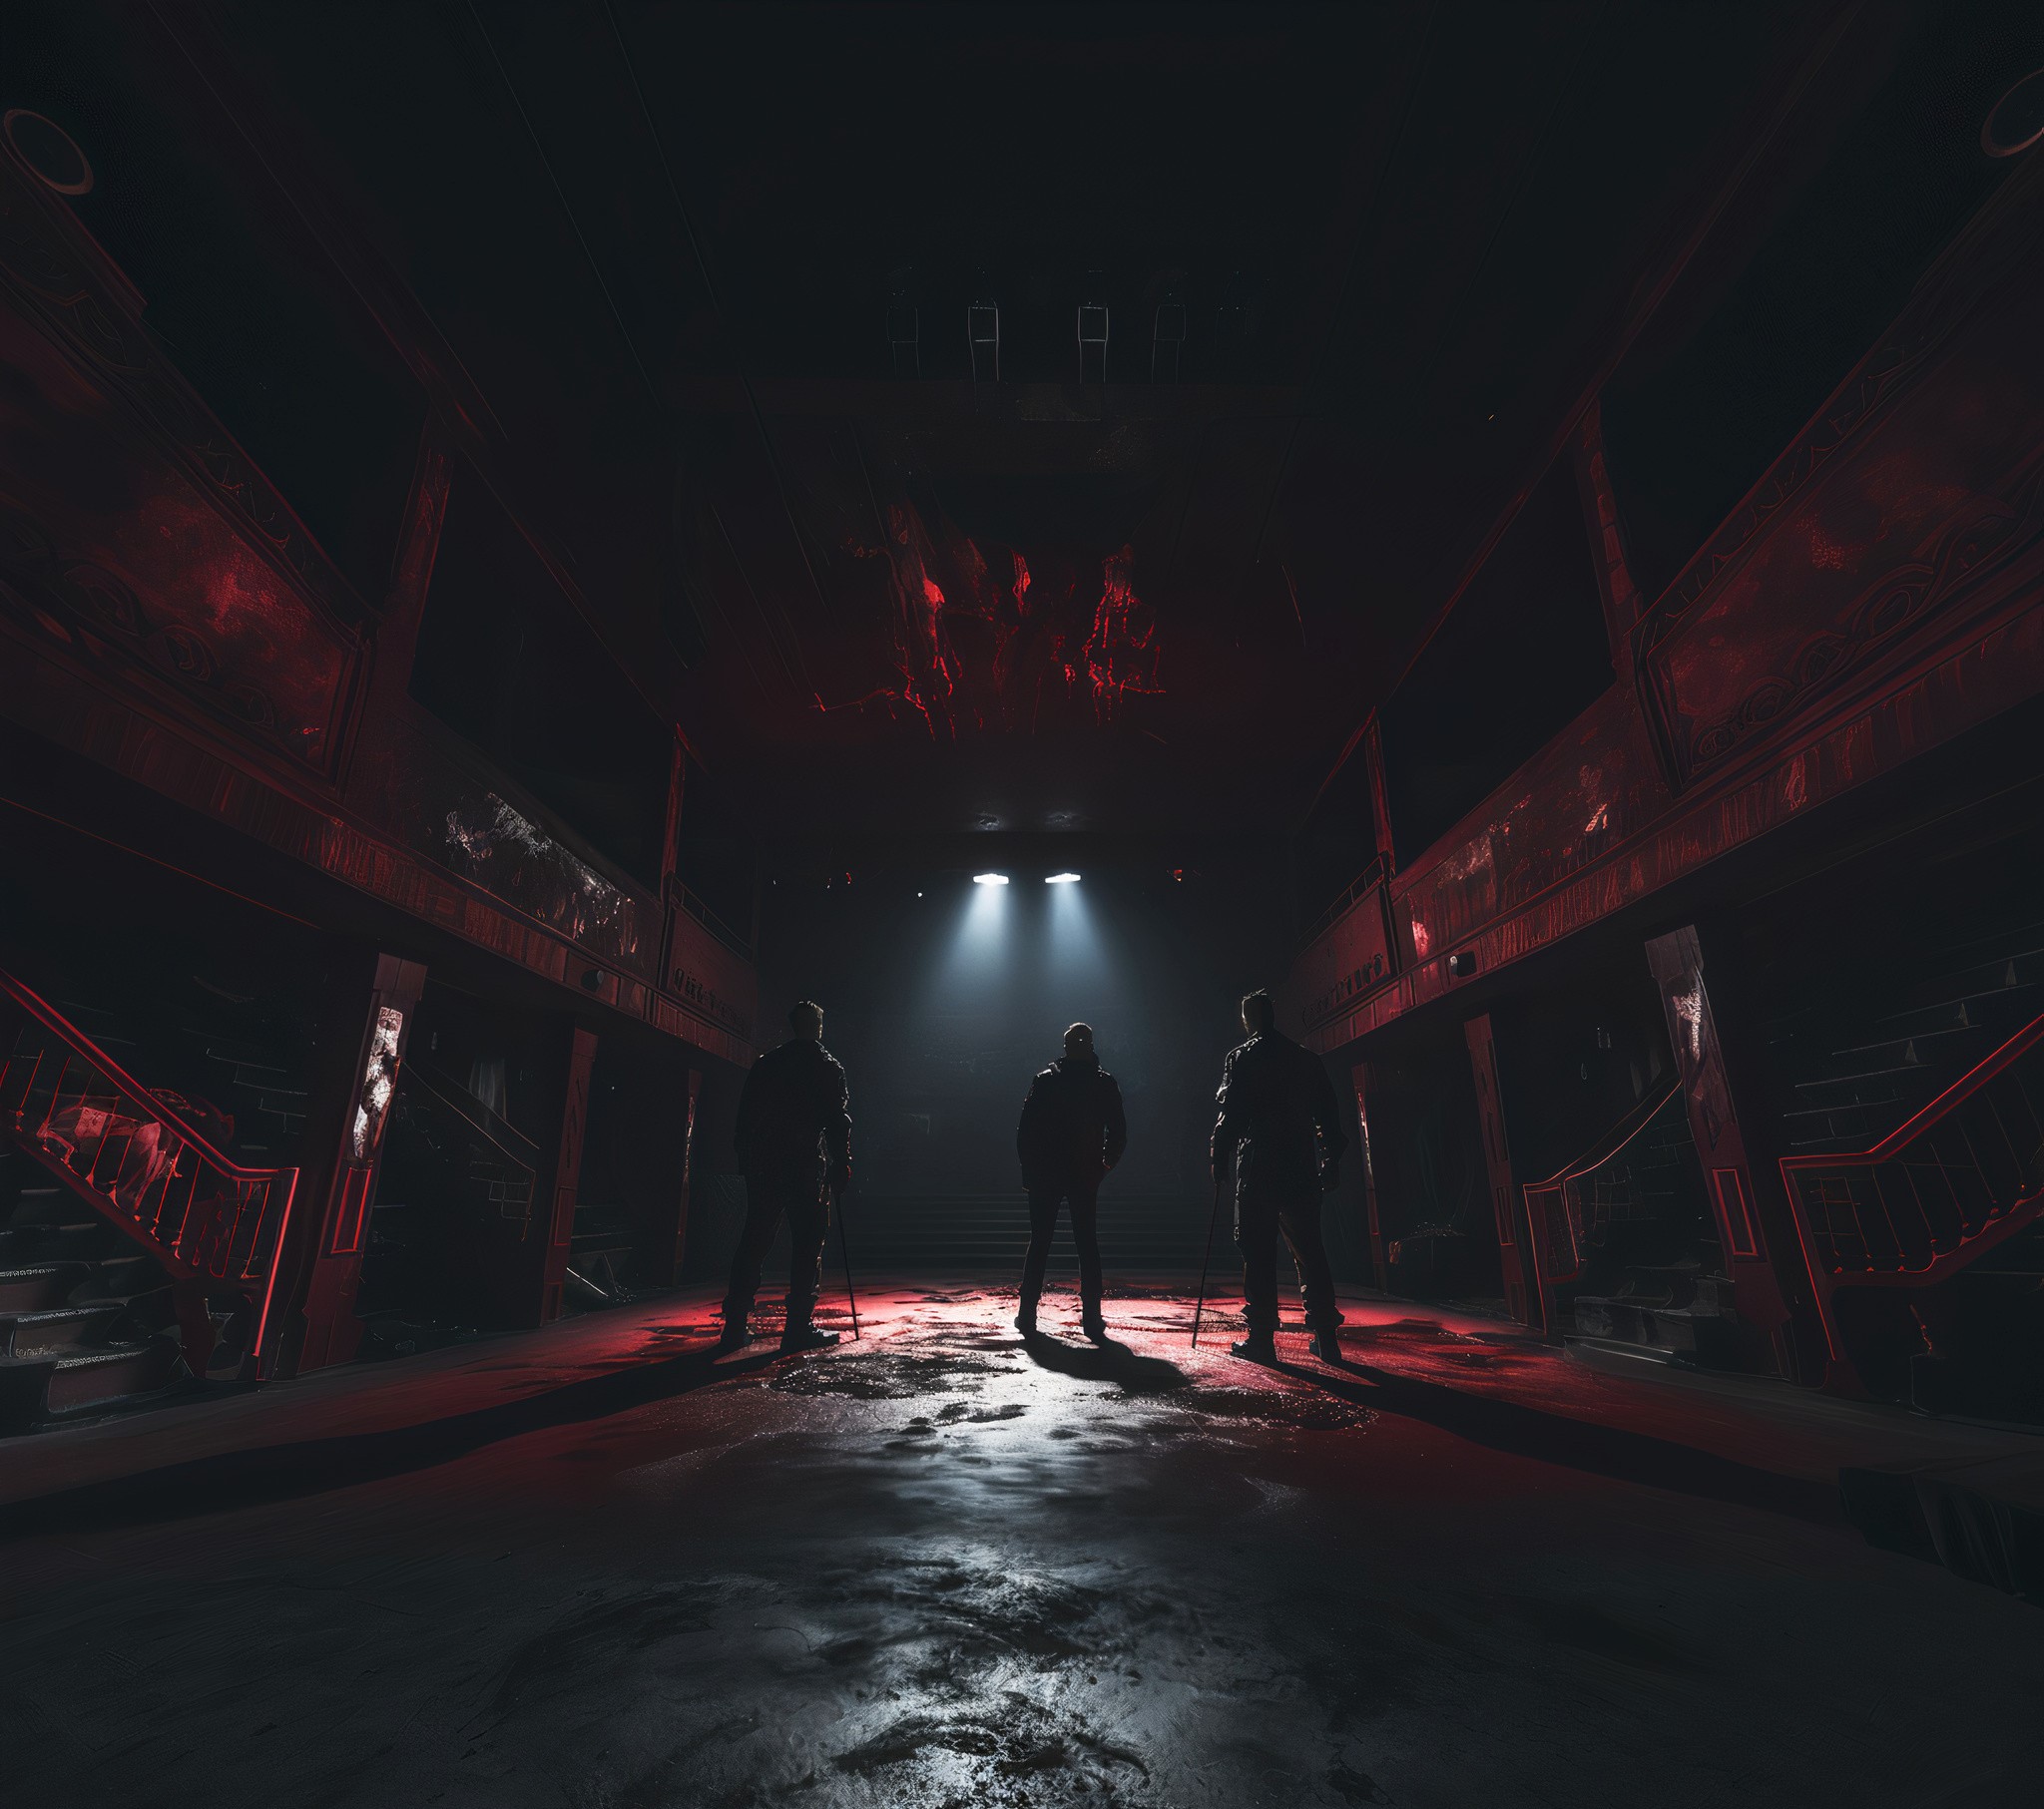 Drei Gestalten auf einer düsteren Bühne, schwarz-rotes Licht